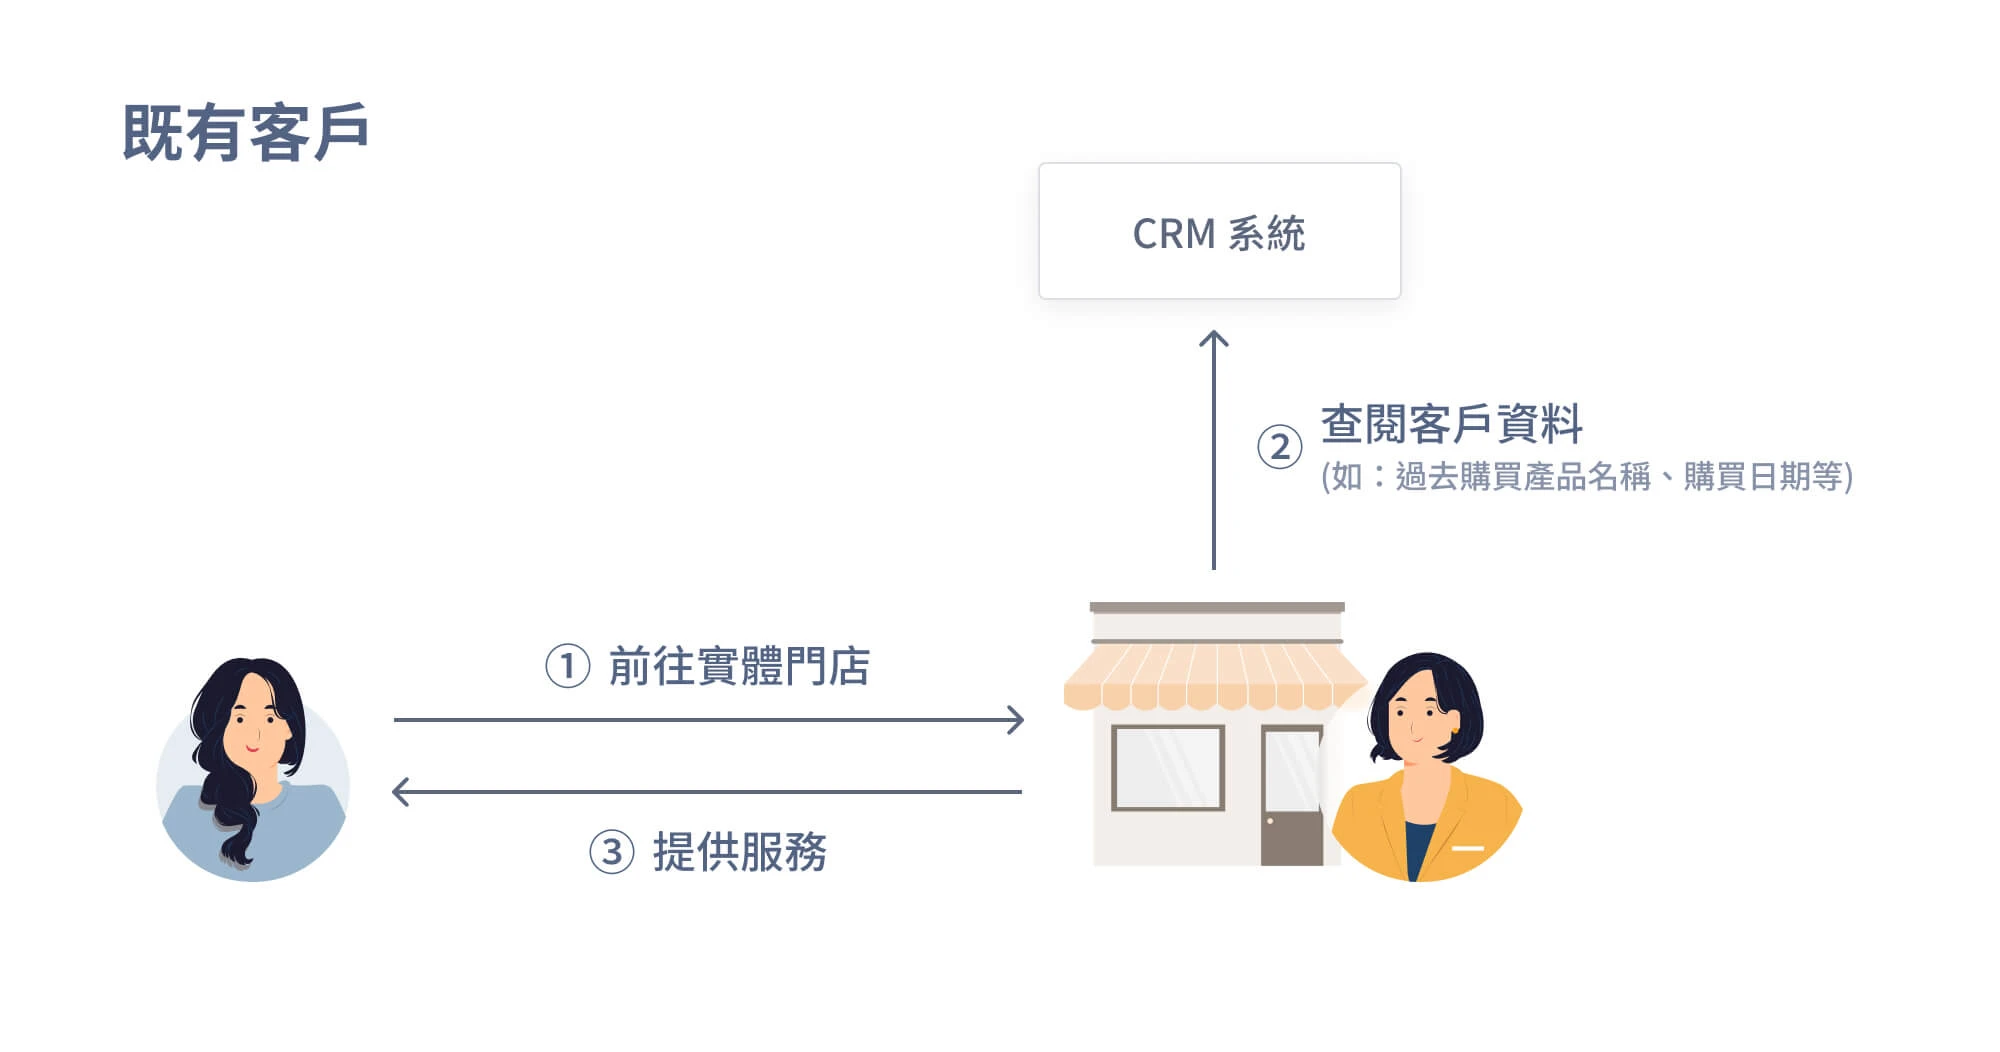 實體門店透過 CRM 瞭解既有客戶流程